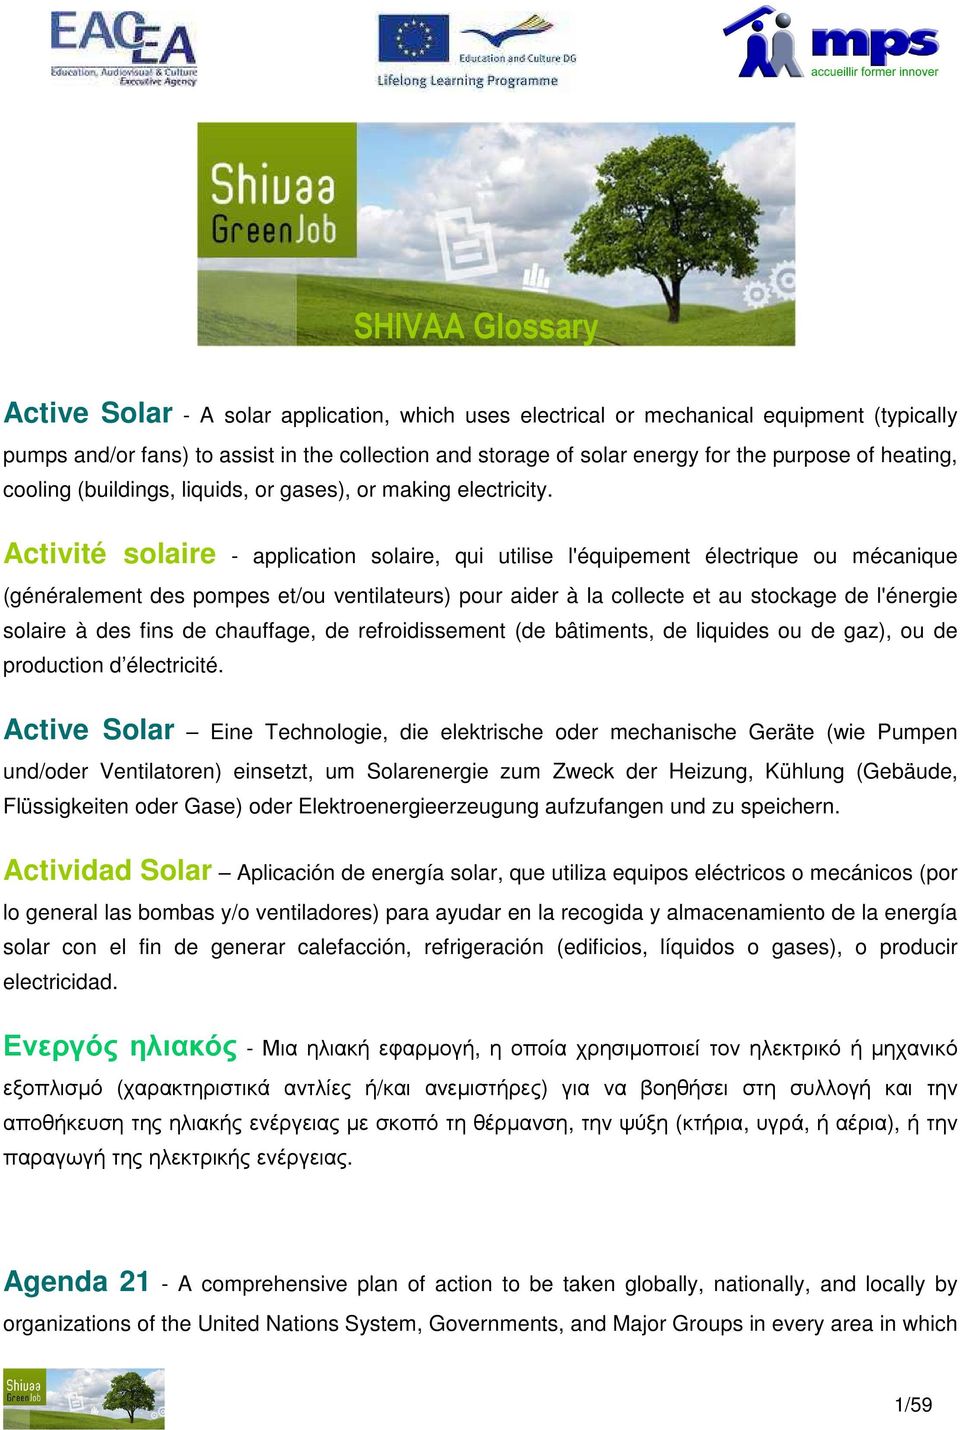 Activité solaire - application solaire, qui utilise l'équipement électrique ou mécanique (généralement des pompes et/ou ventilateurs) pour aider à la collecte et au stockage de l'énergie solaire à